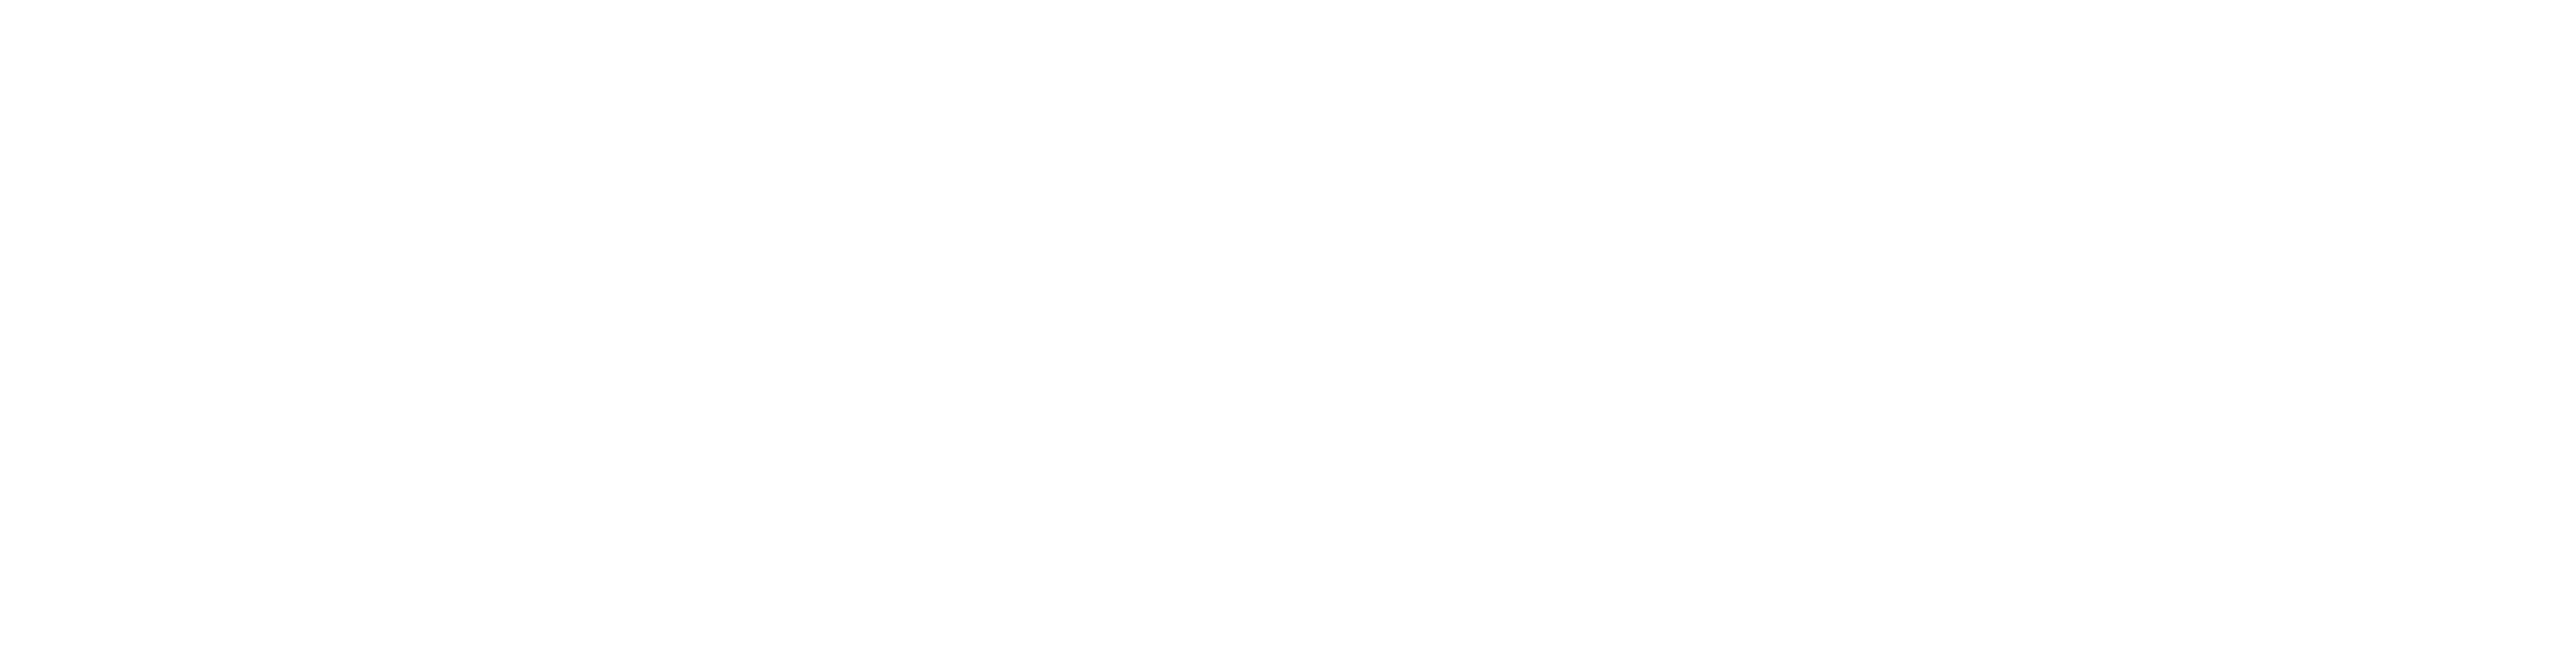 SEMA Conference